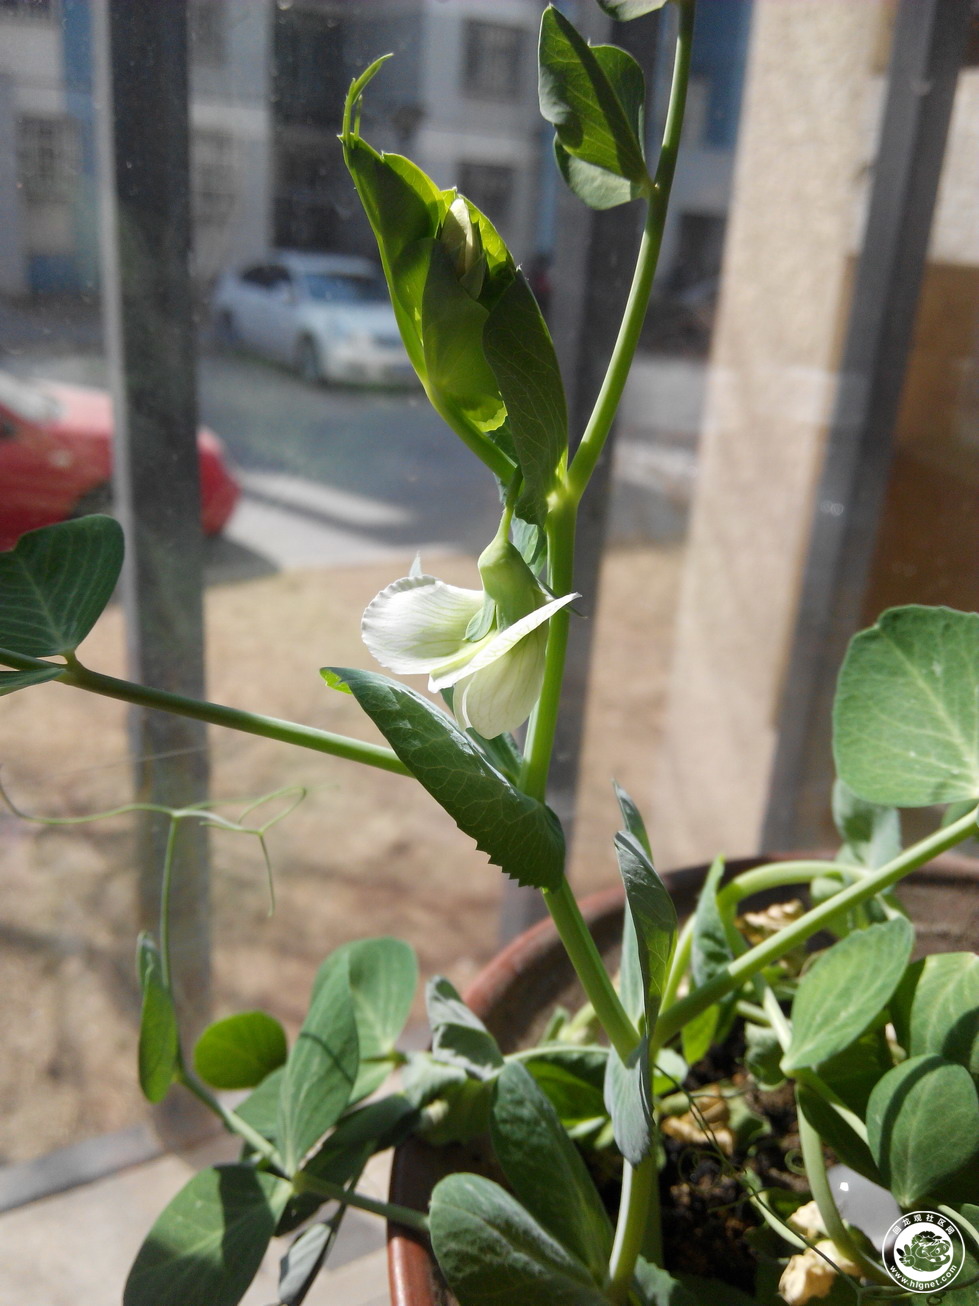 【43号】 【农业嘉年华抢票征文】 我家窗台上的小豆苗开花了